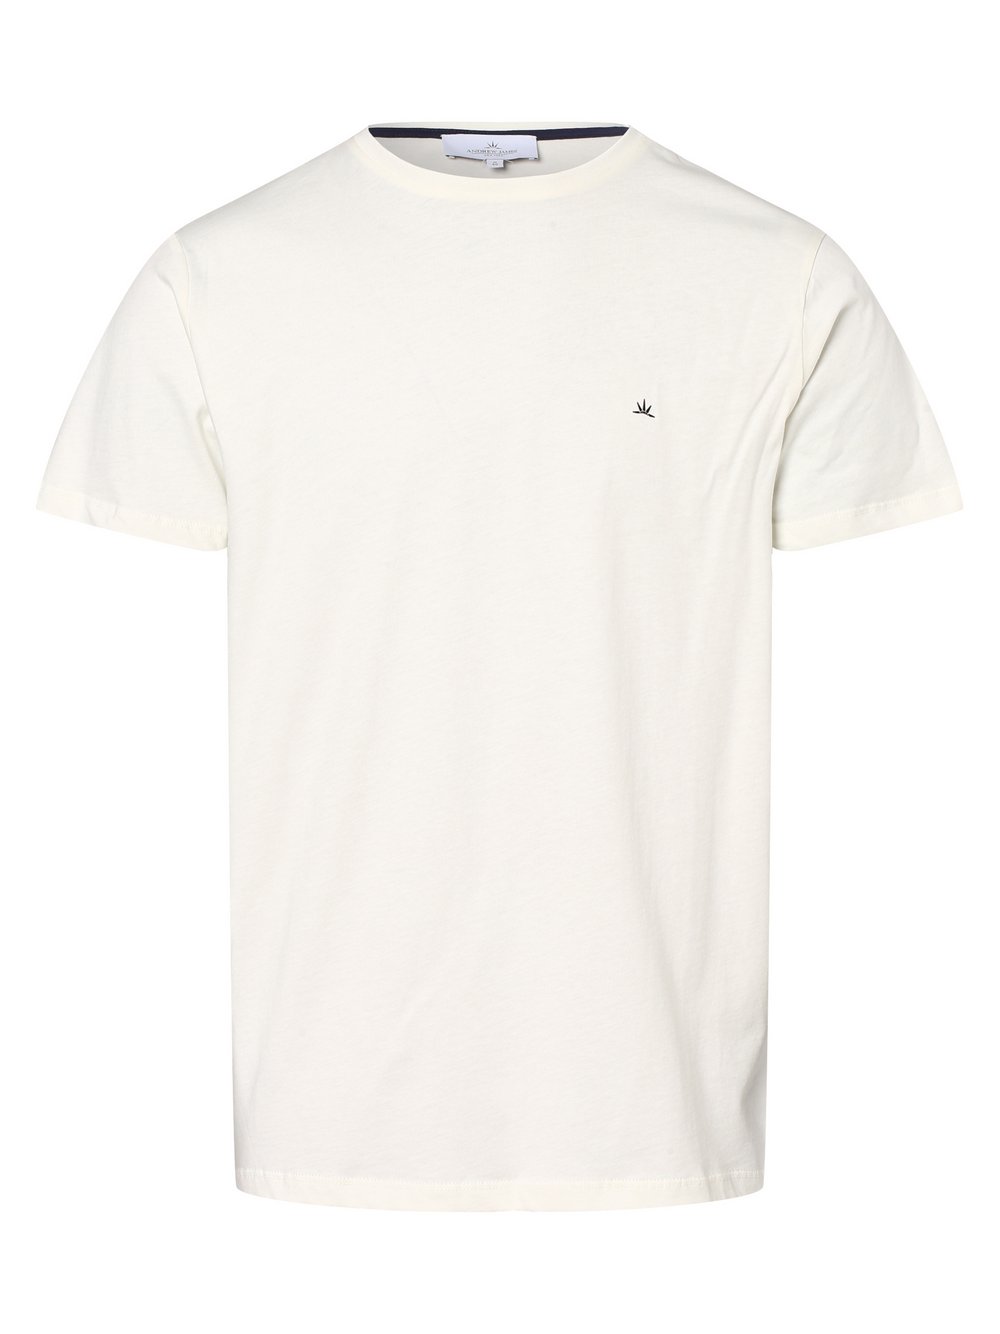 Andrew James New York - T-shirt męski, biały